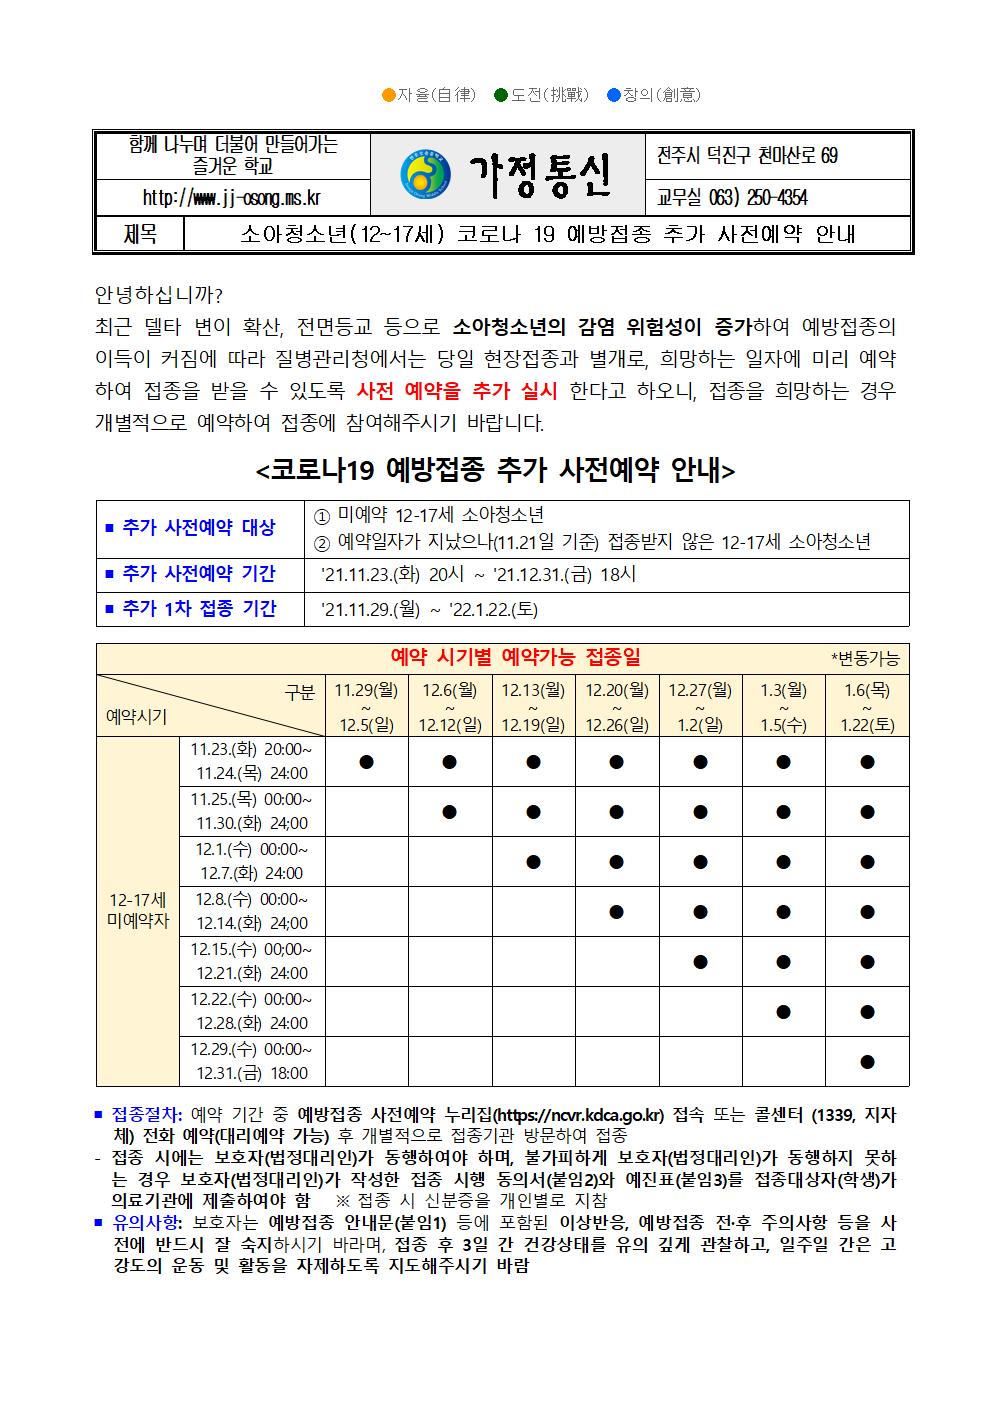 코로나 19 예방접종 추가 안내 가정통신문(11월)001